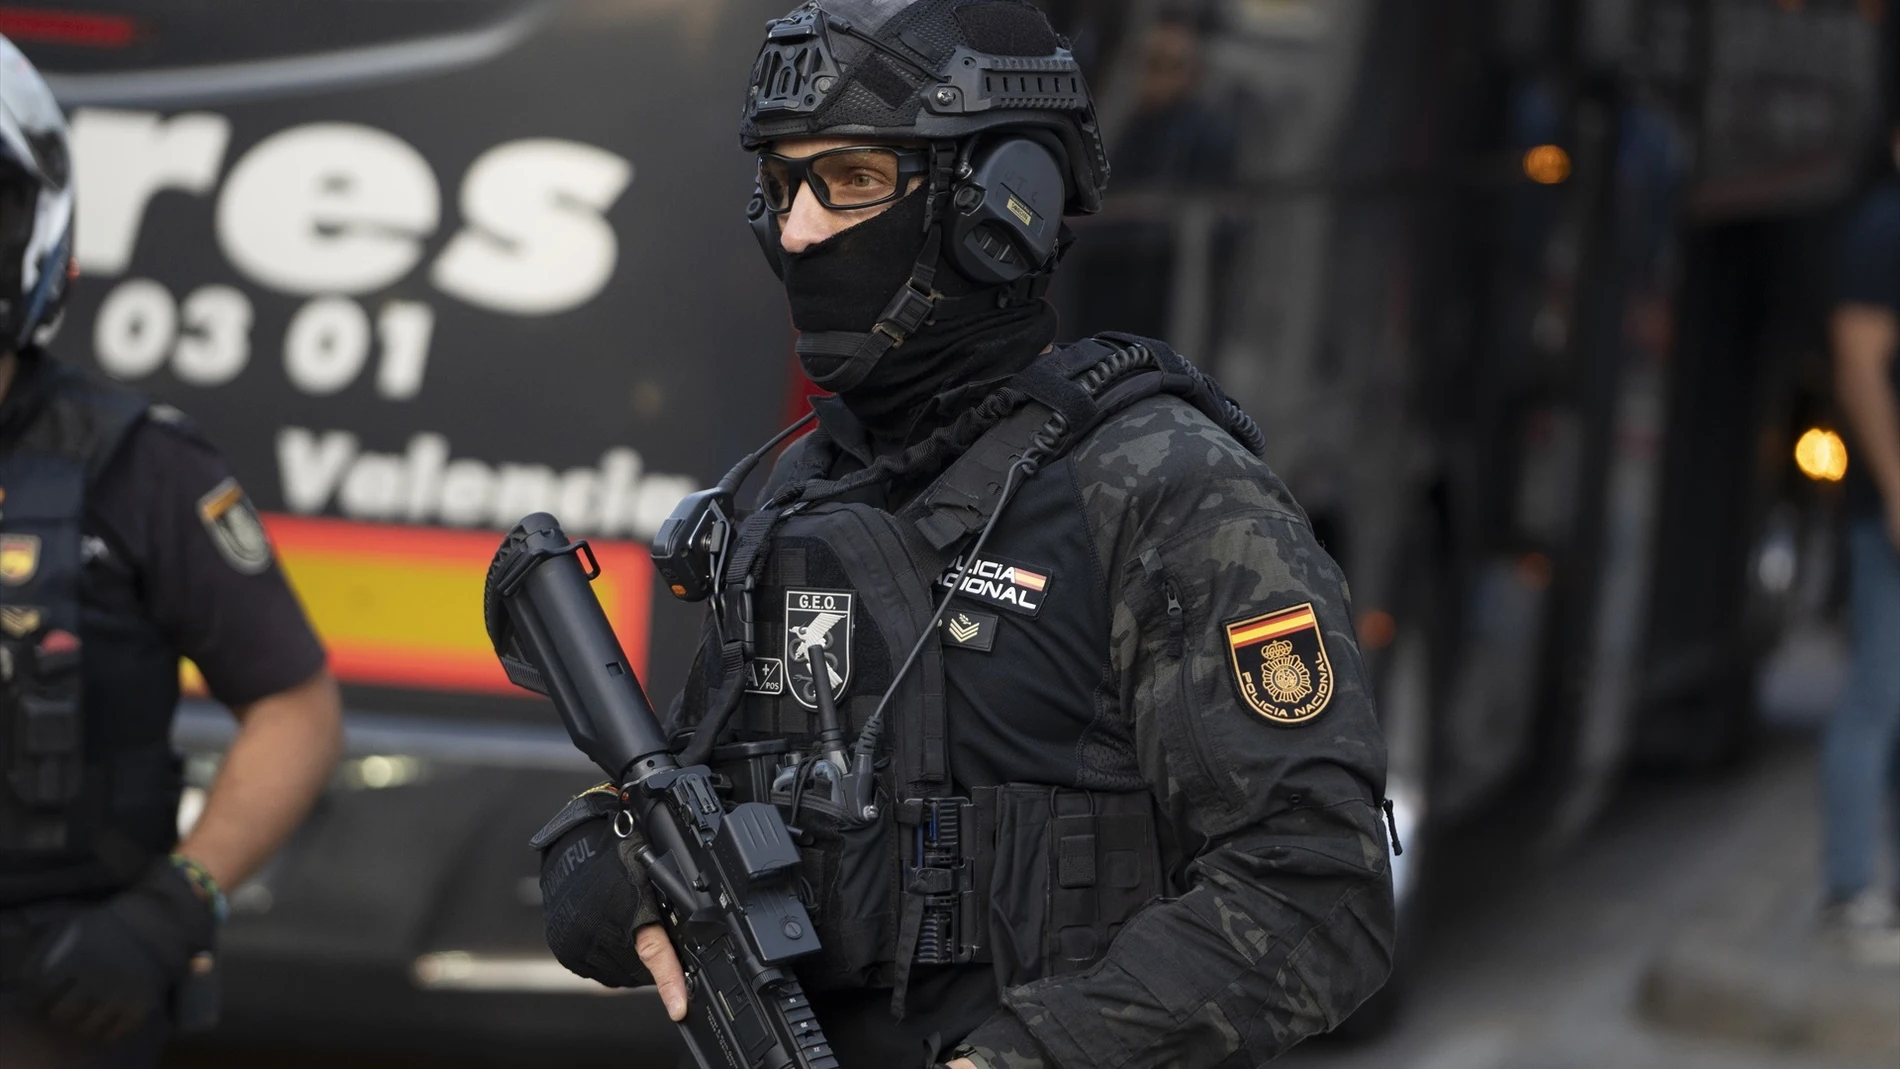 España sigue en el nivel 4 de alerta antiterrorista: ¿Quién lo decide? ¿Cuántos niveles hay? ¿Qué implica el nivel 5?